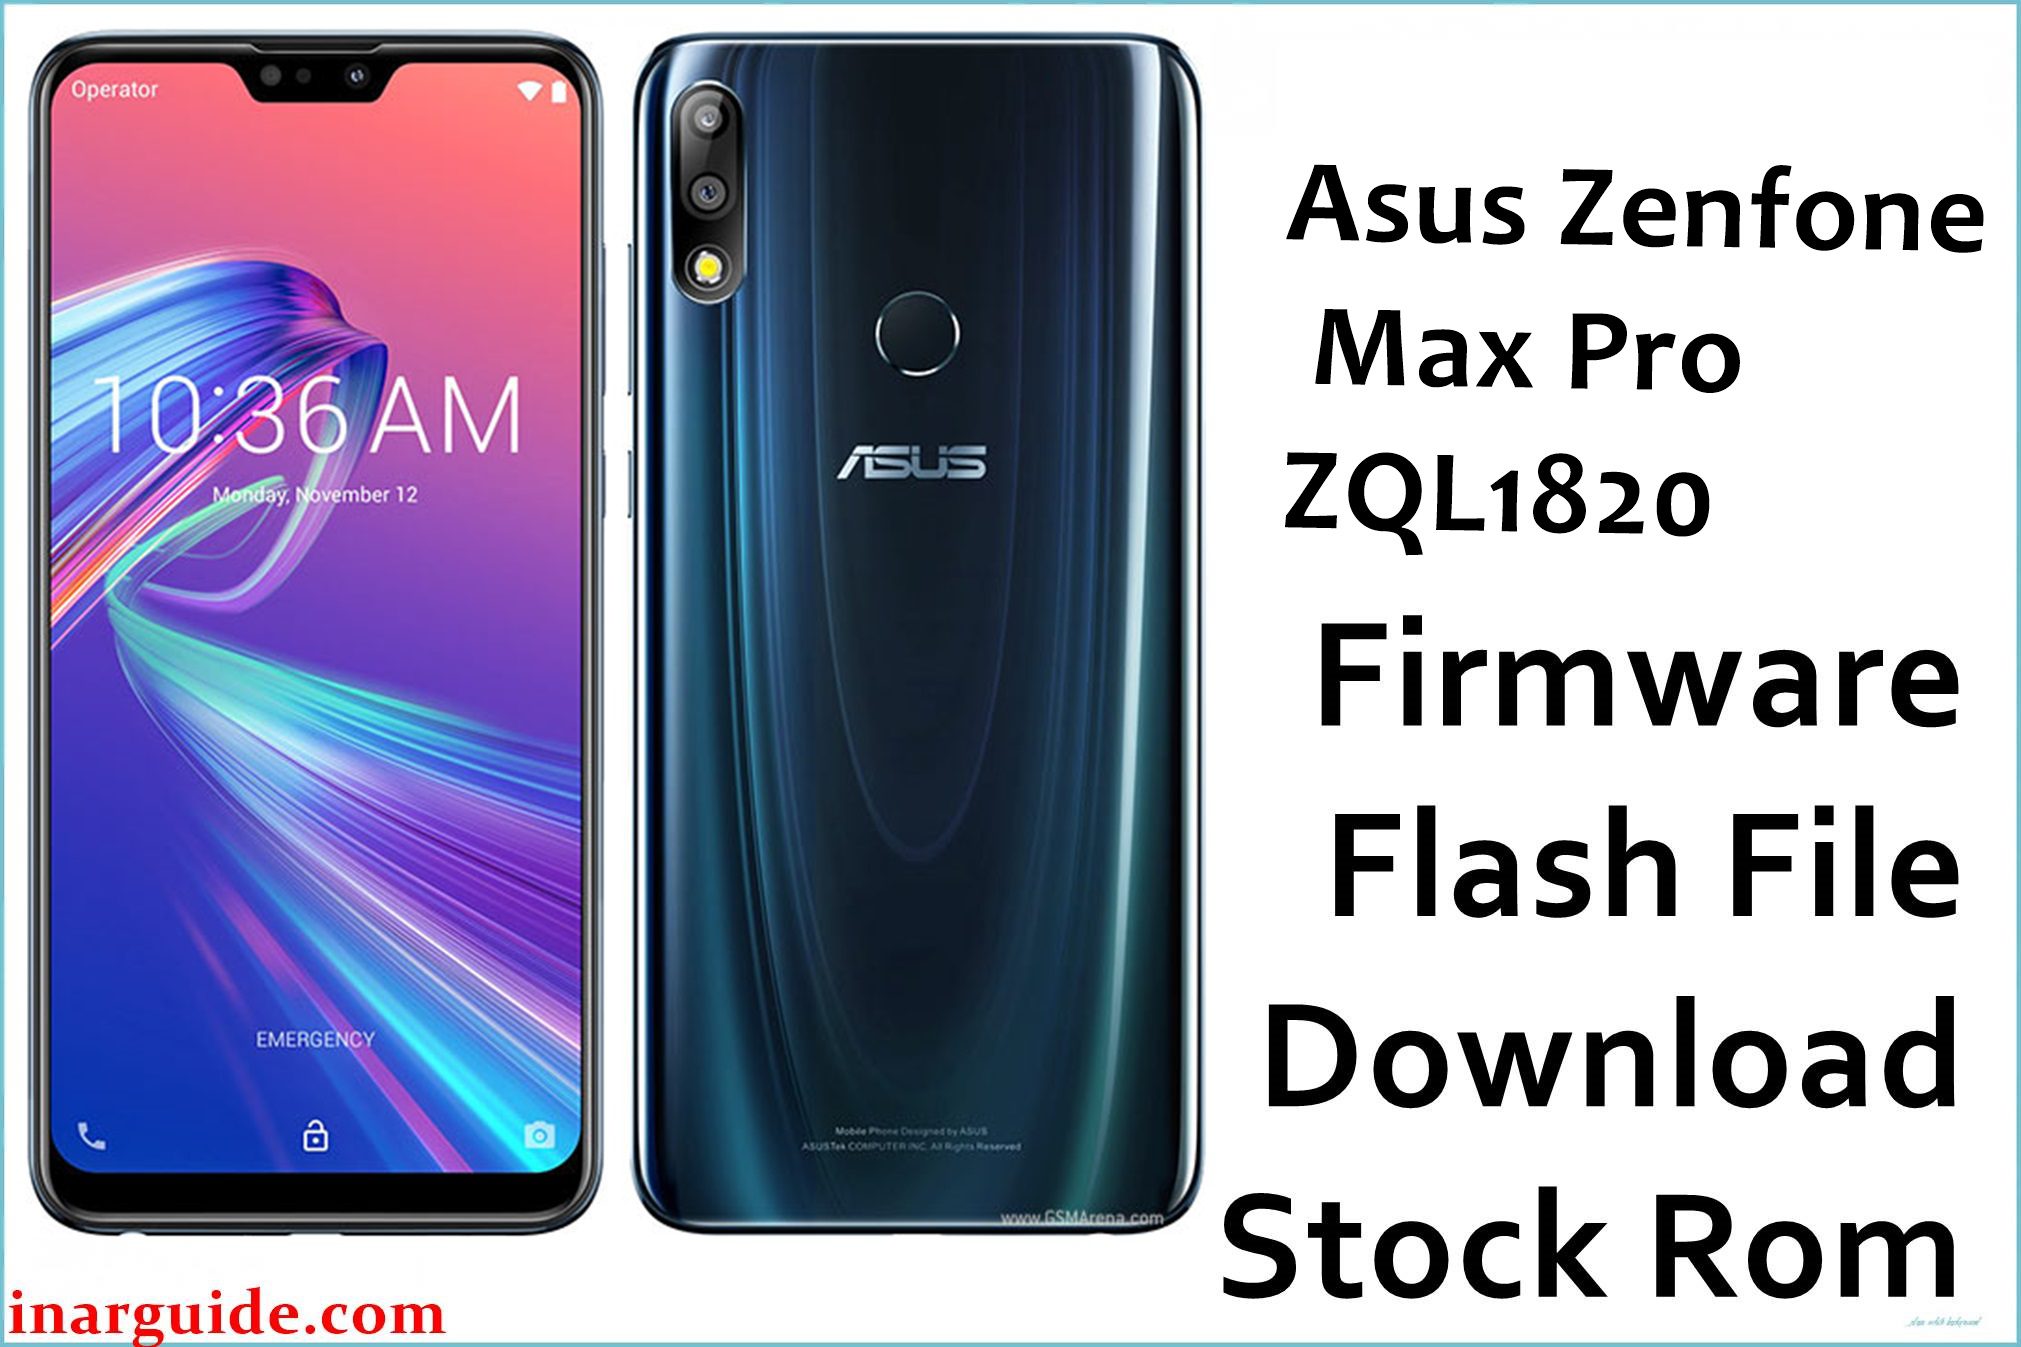 Asus Zenfone Max Pro ZQL1820